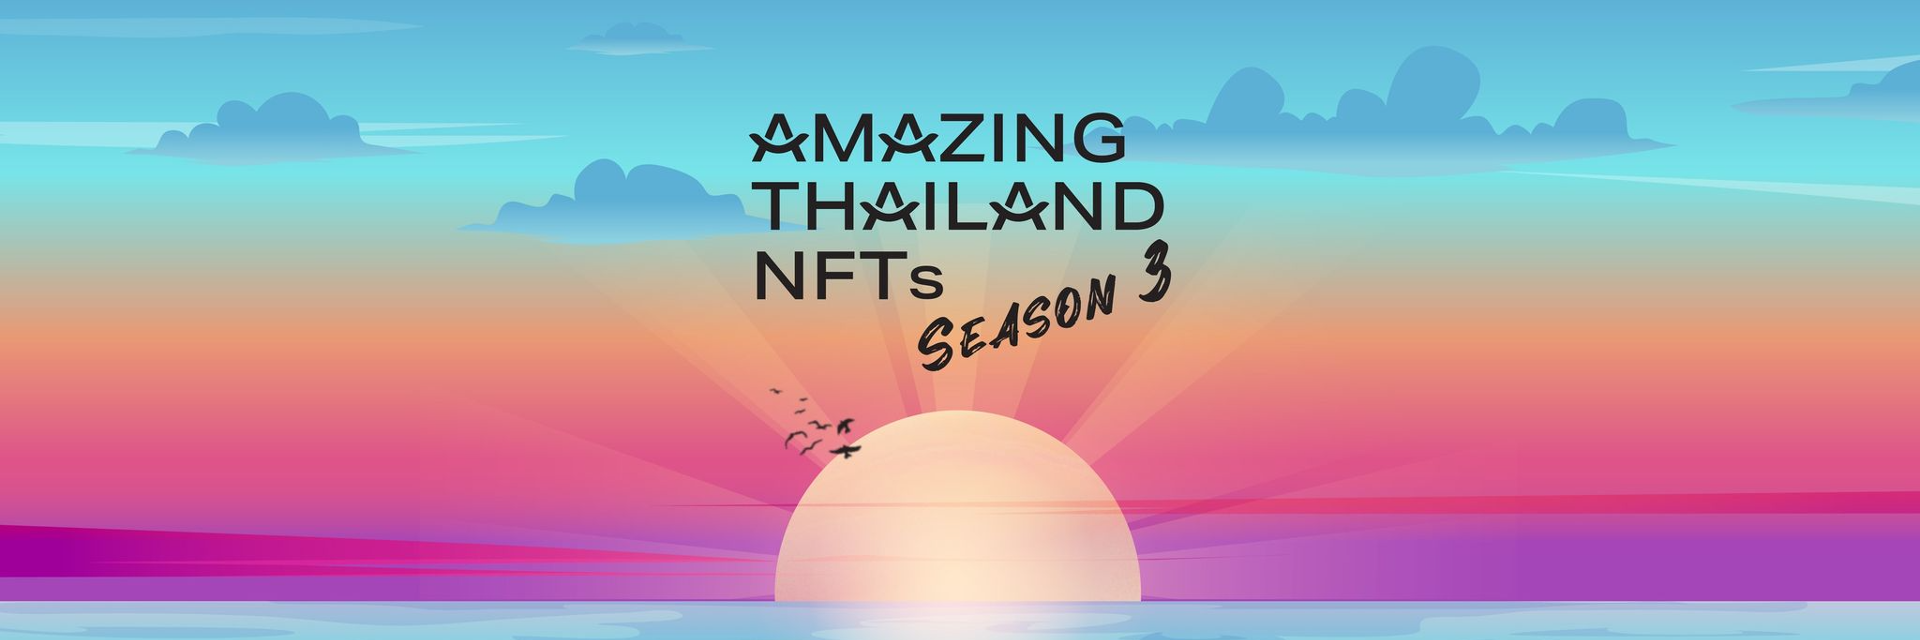 ททท. ชวนผจญภัยสะสม NFT ต่อเนื่อง กับโครงการ ‘Amazing Thailand NFTs Season 3’